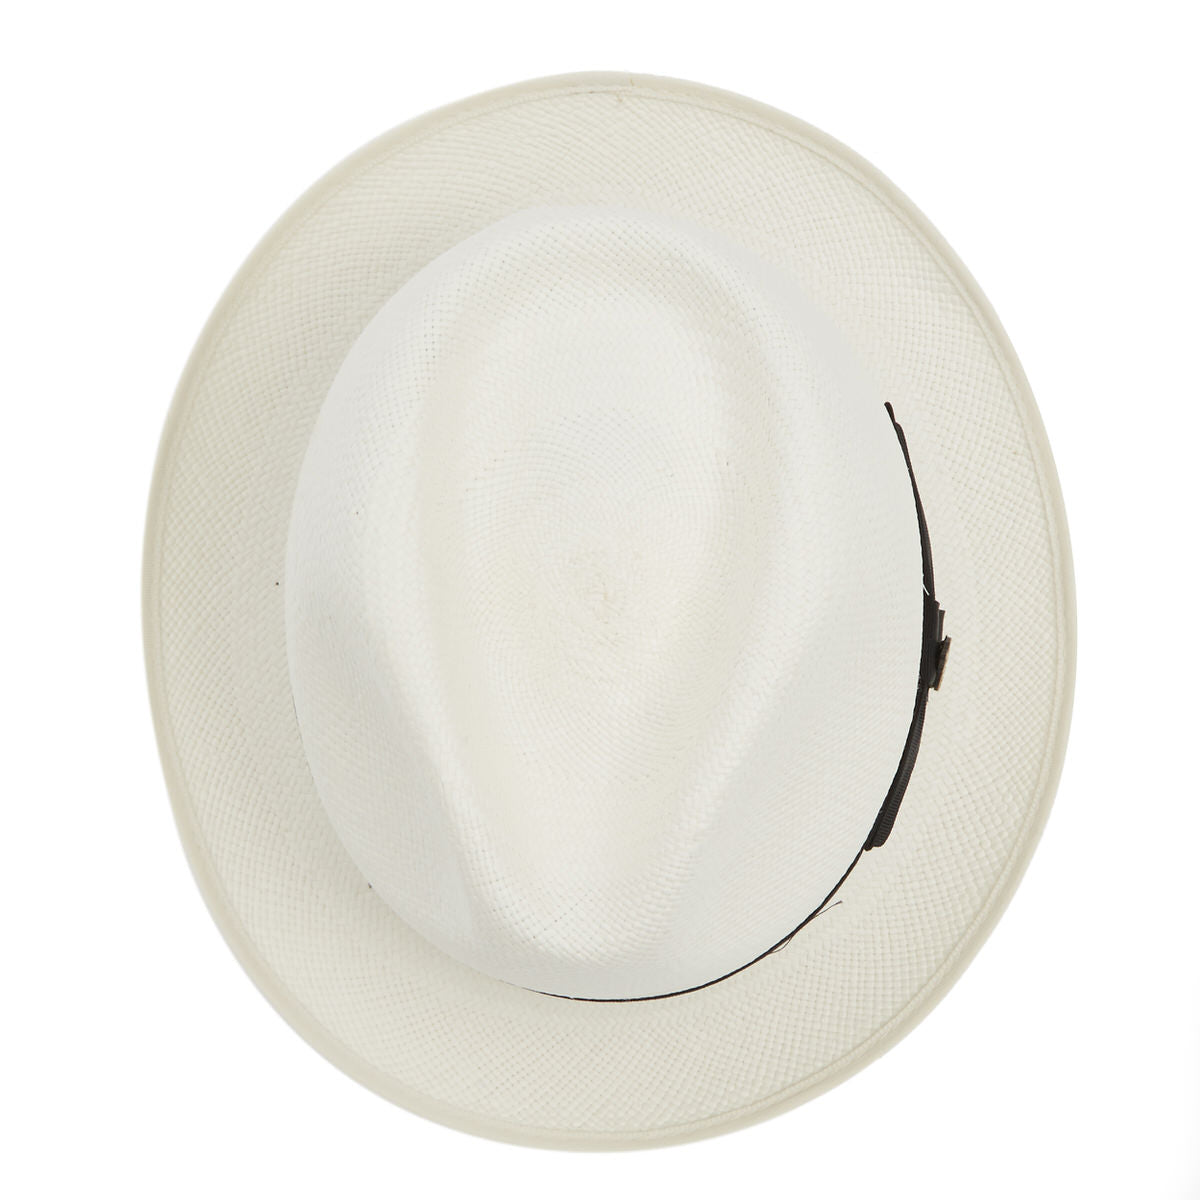 Classic Yorkie Panama Hat with Black Band & Cream Binding